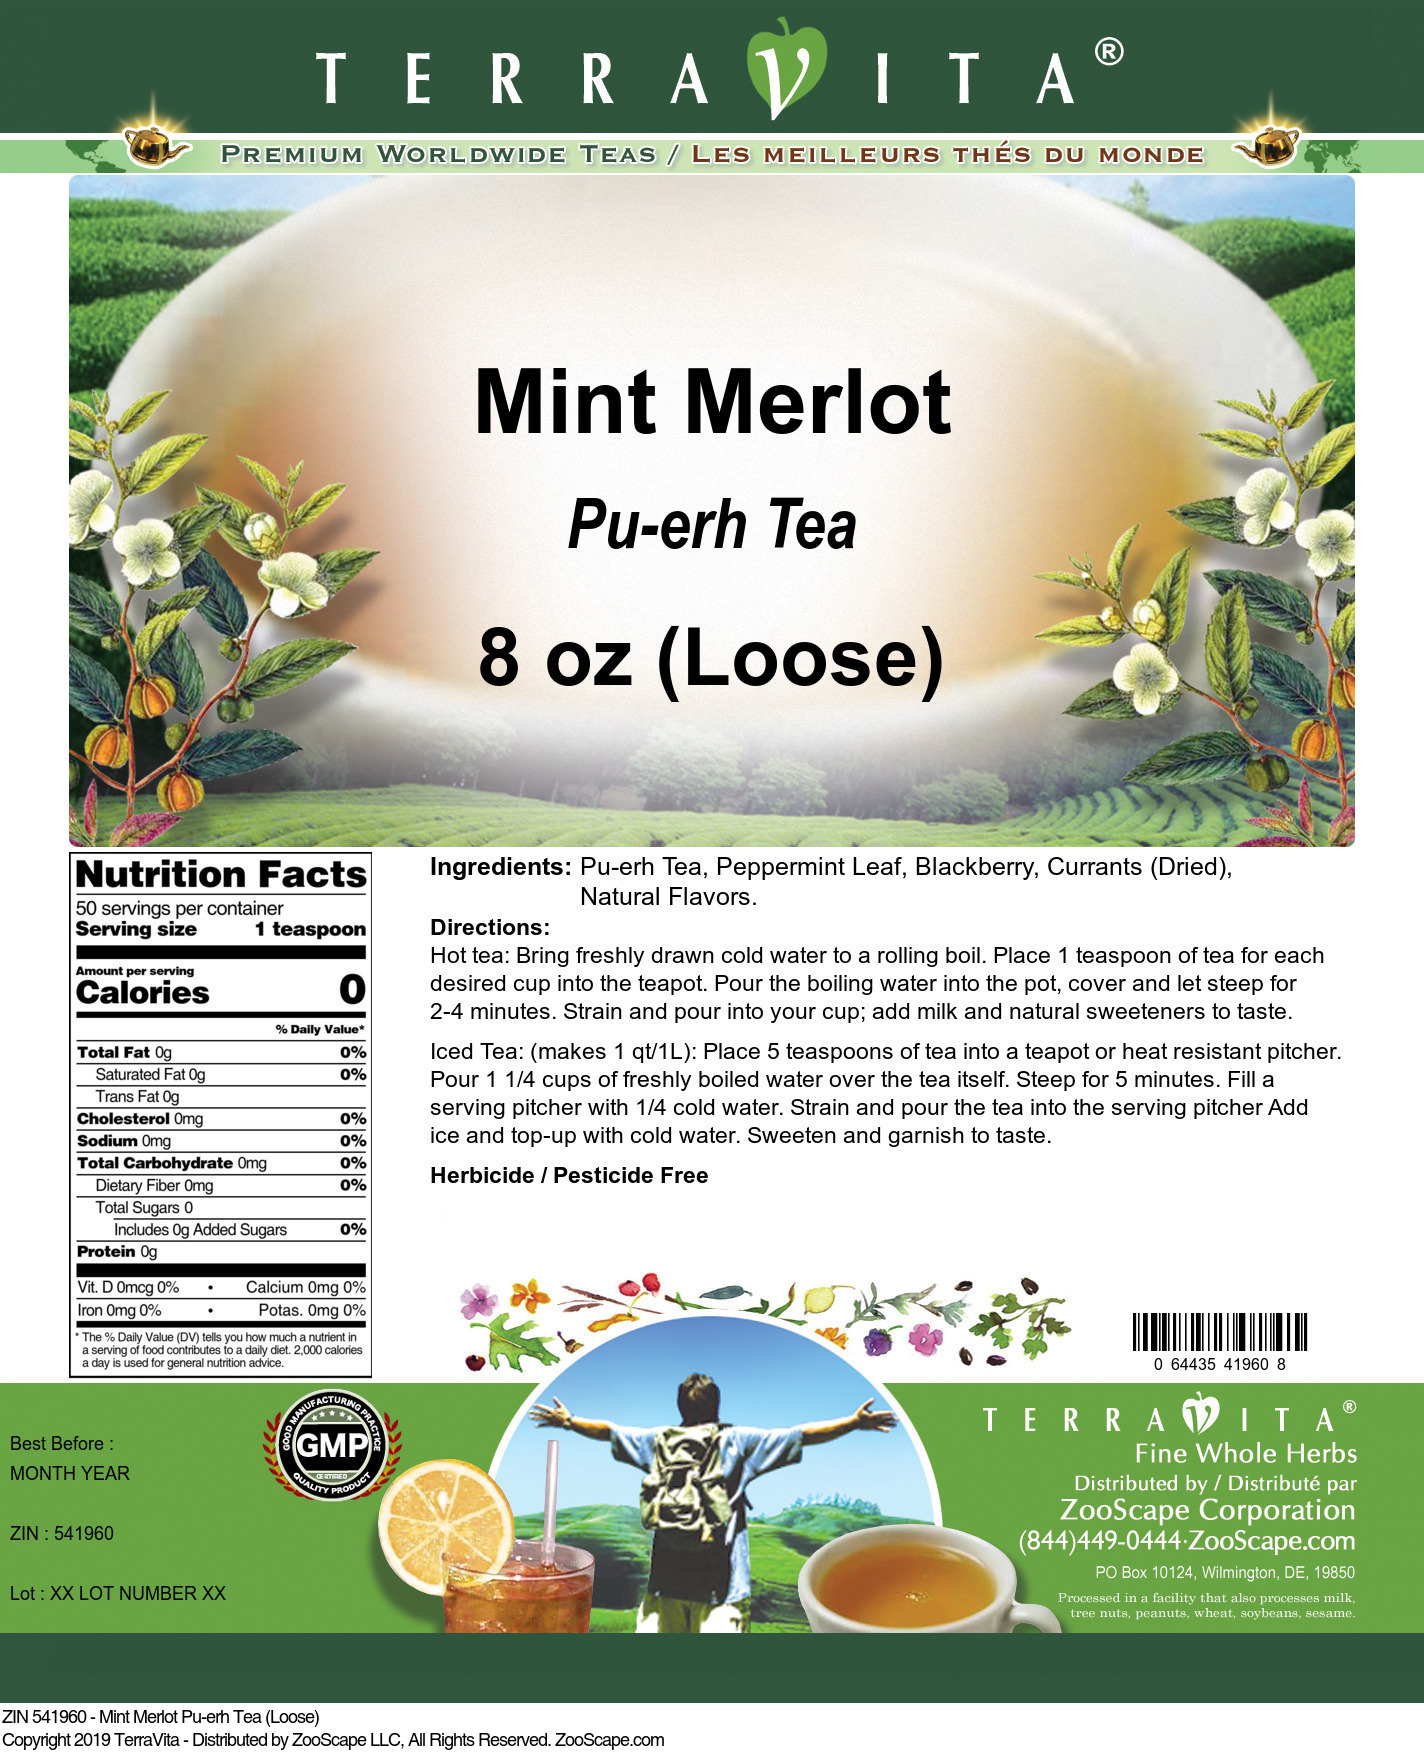 Mint Merlot Pu-erh Tea (Loose) - Label